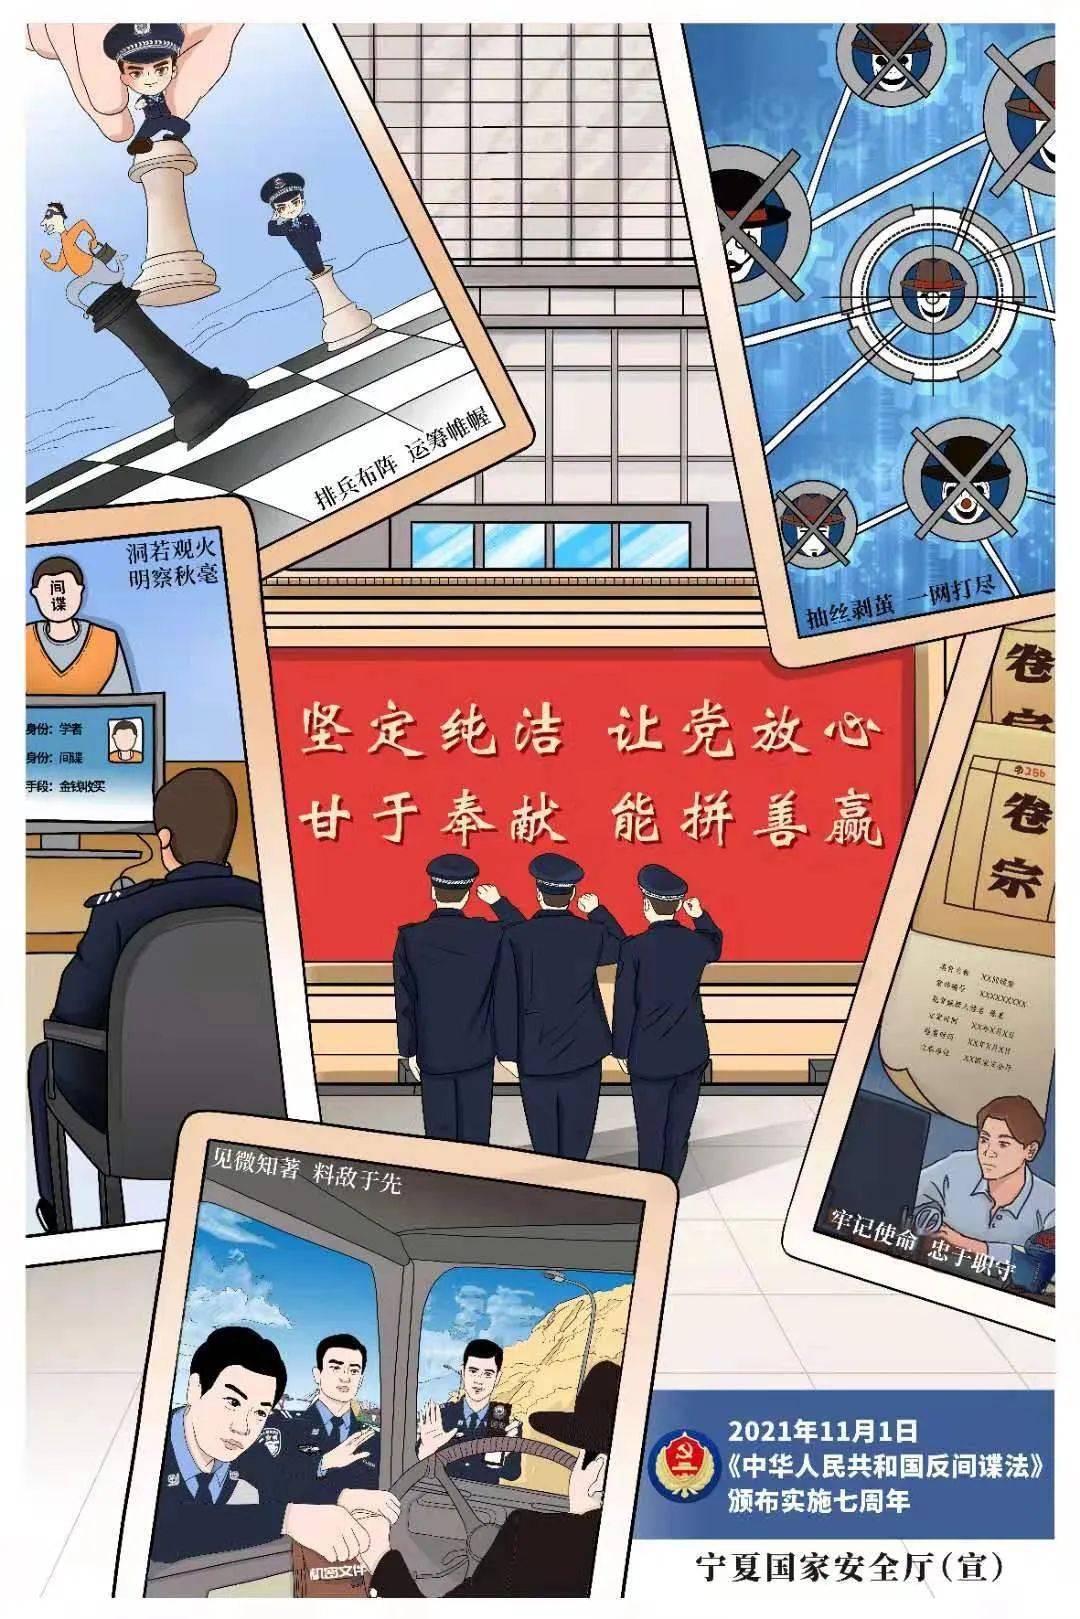 《中华人民共和国反间谍法》颁布实施7周年海报